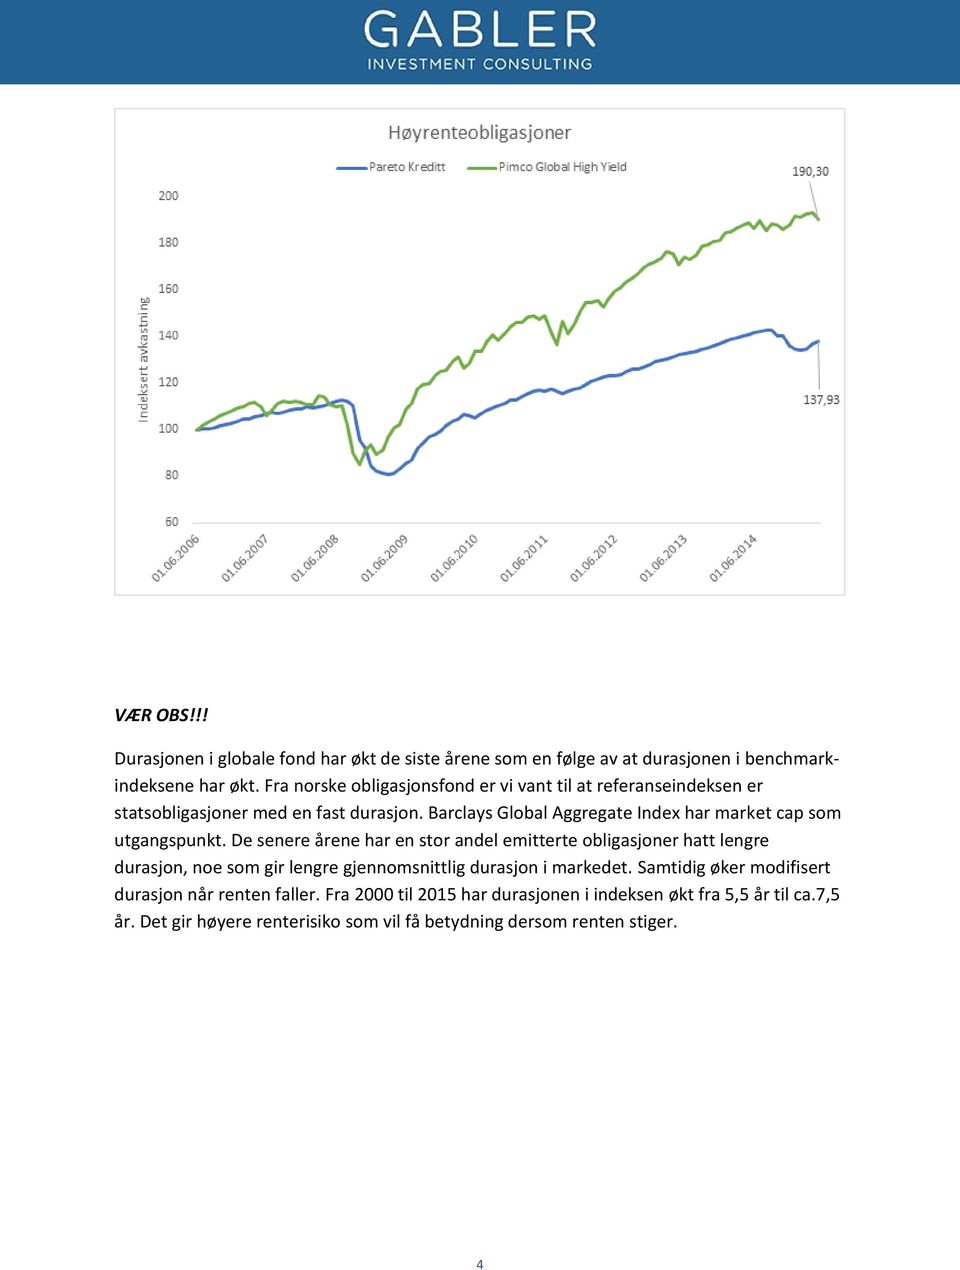 Barclays Global Aggregate Index har market cap som utgangspunkt.